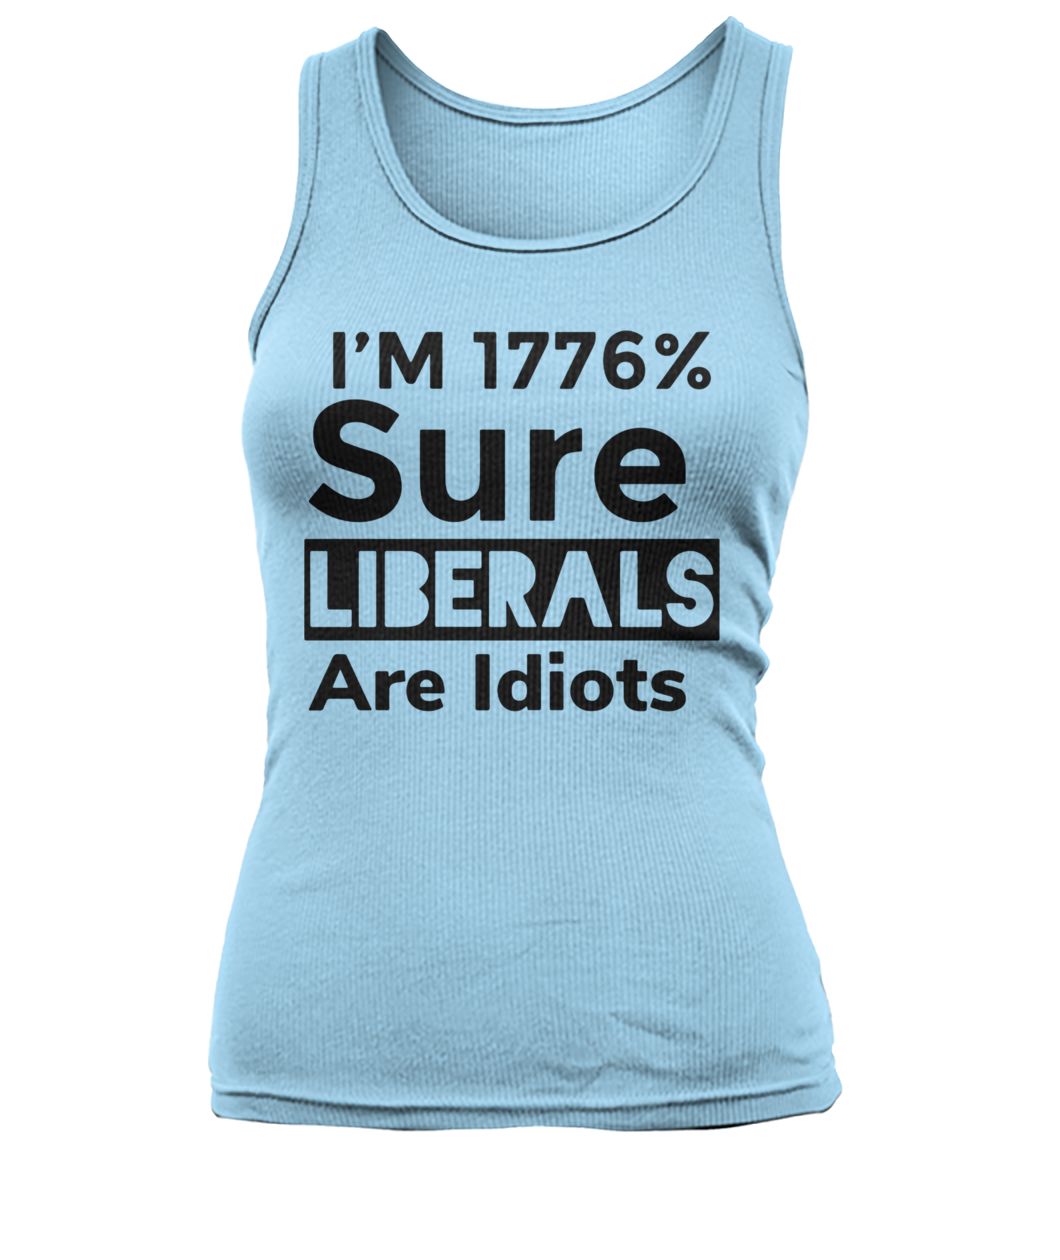 I'm 1776% sure liberals are idiots women's tank top